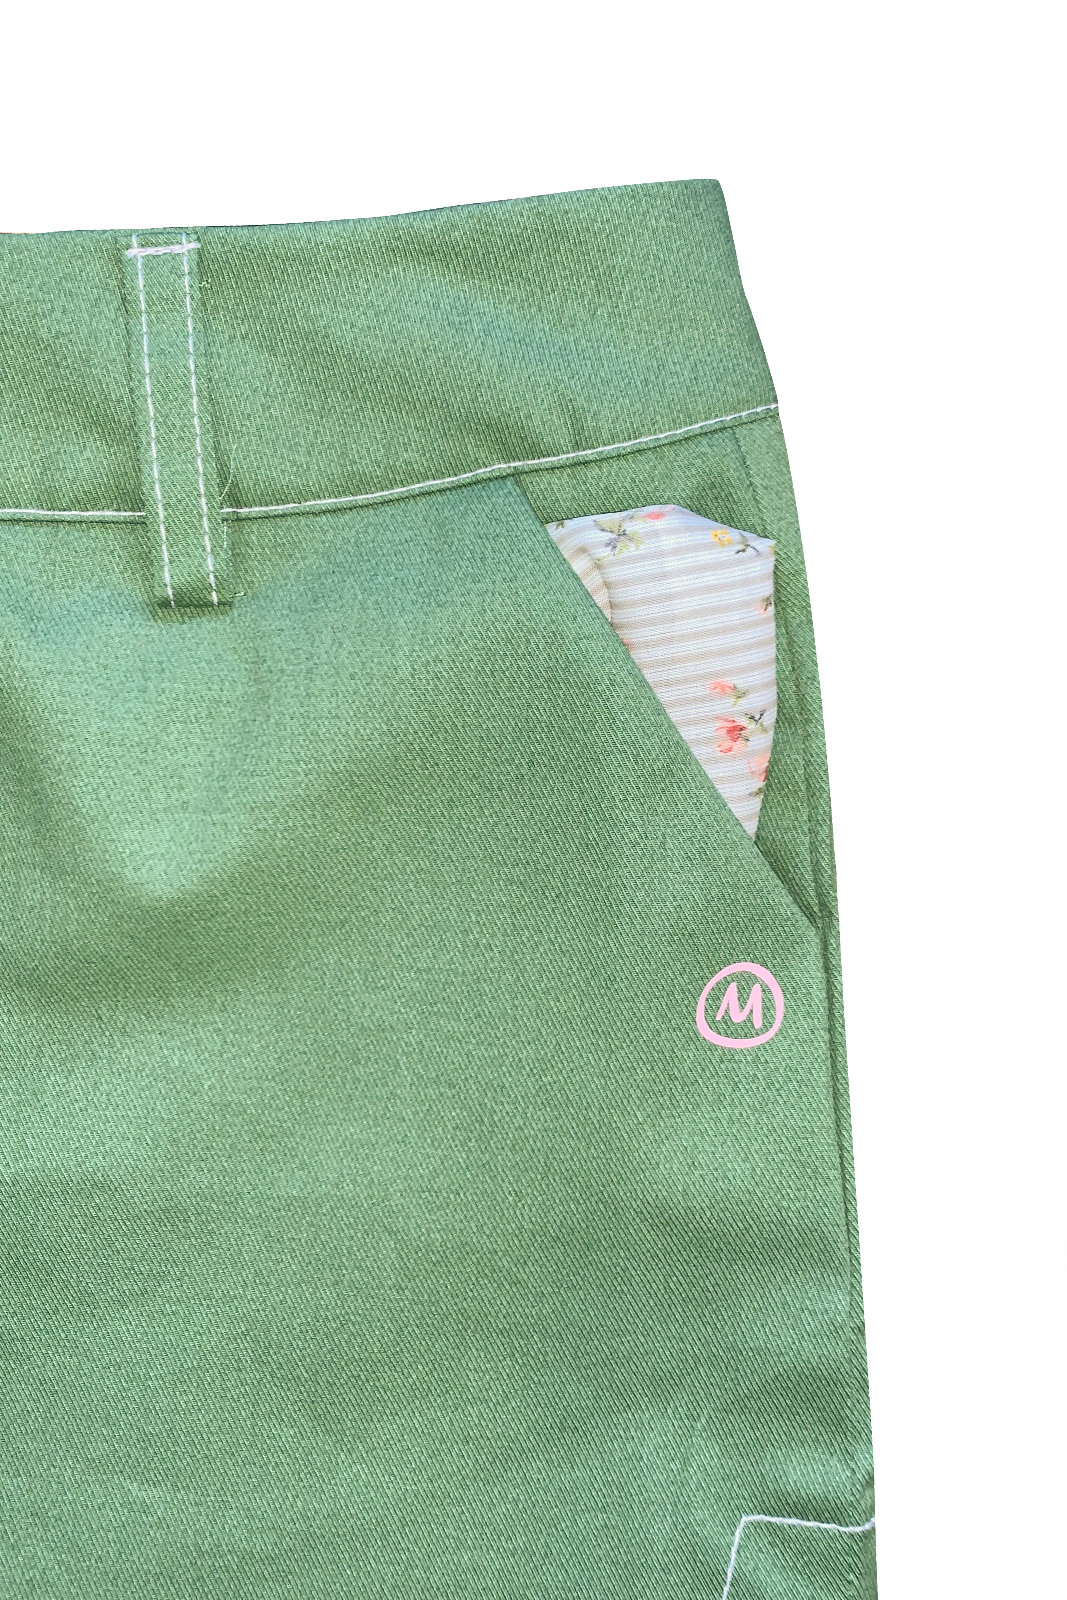 pantalone corto donna arrampicata verde cotone STEFFY Monvic